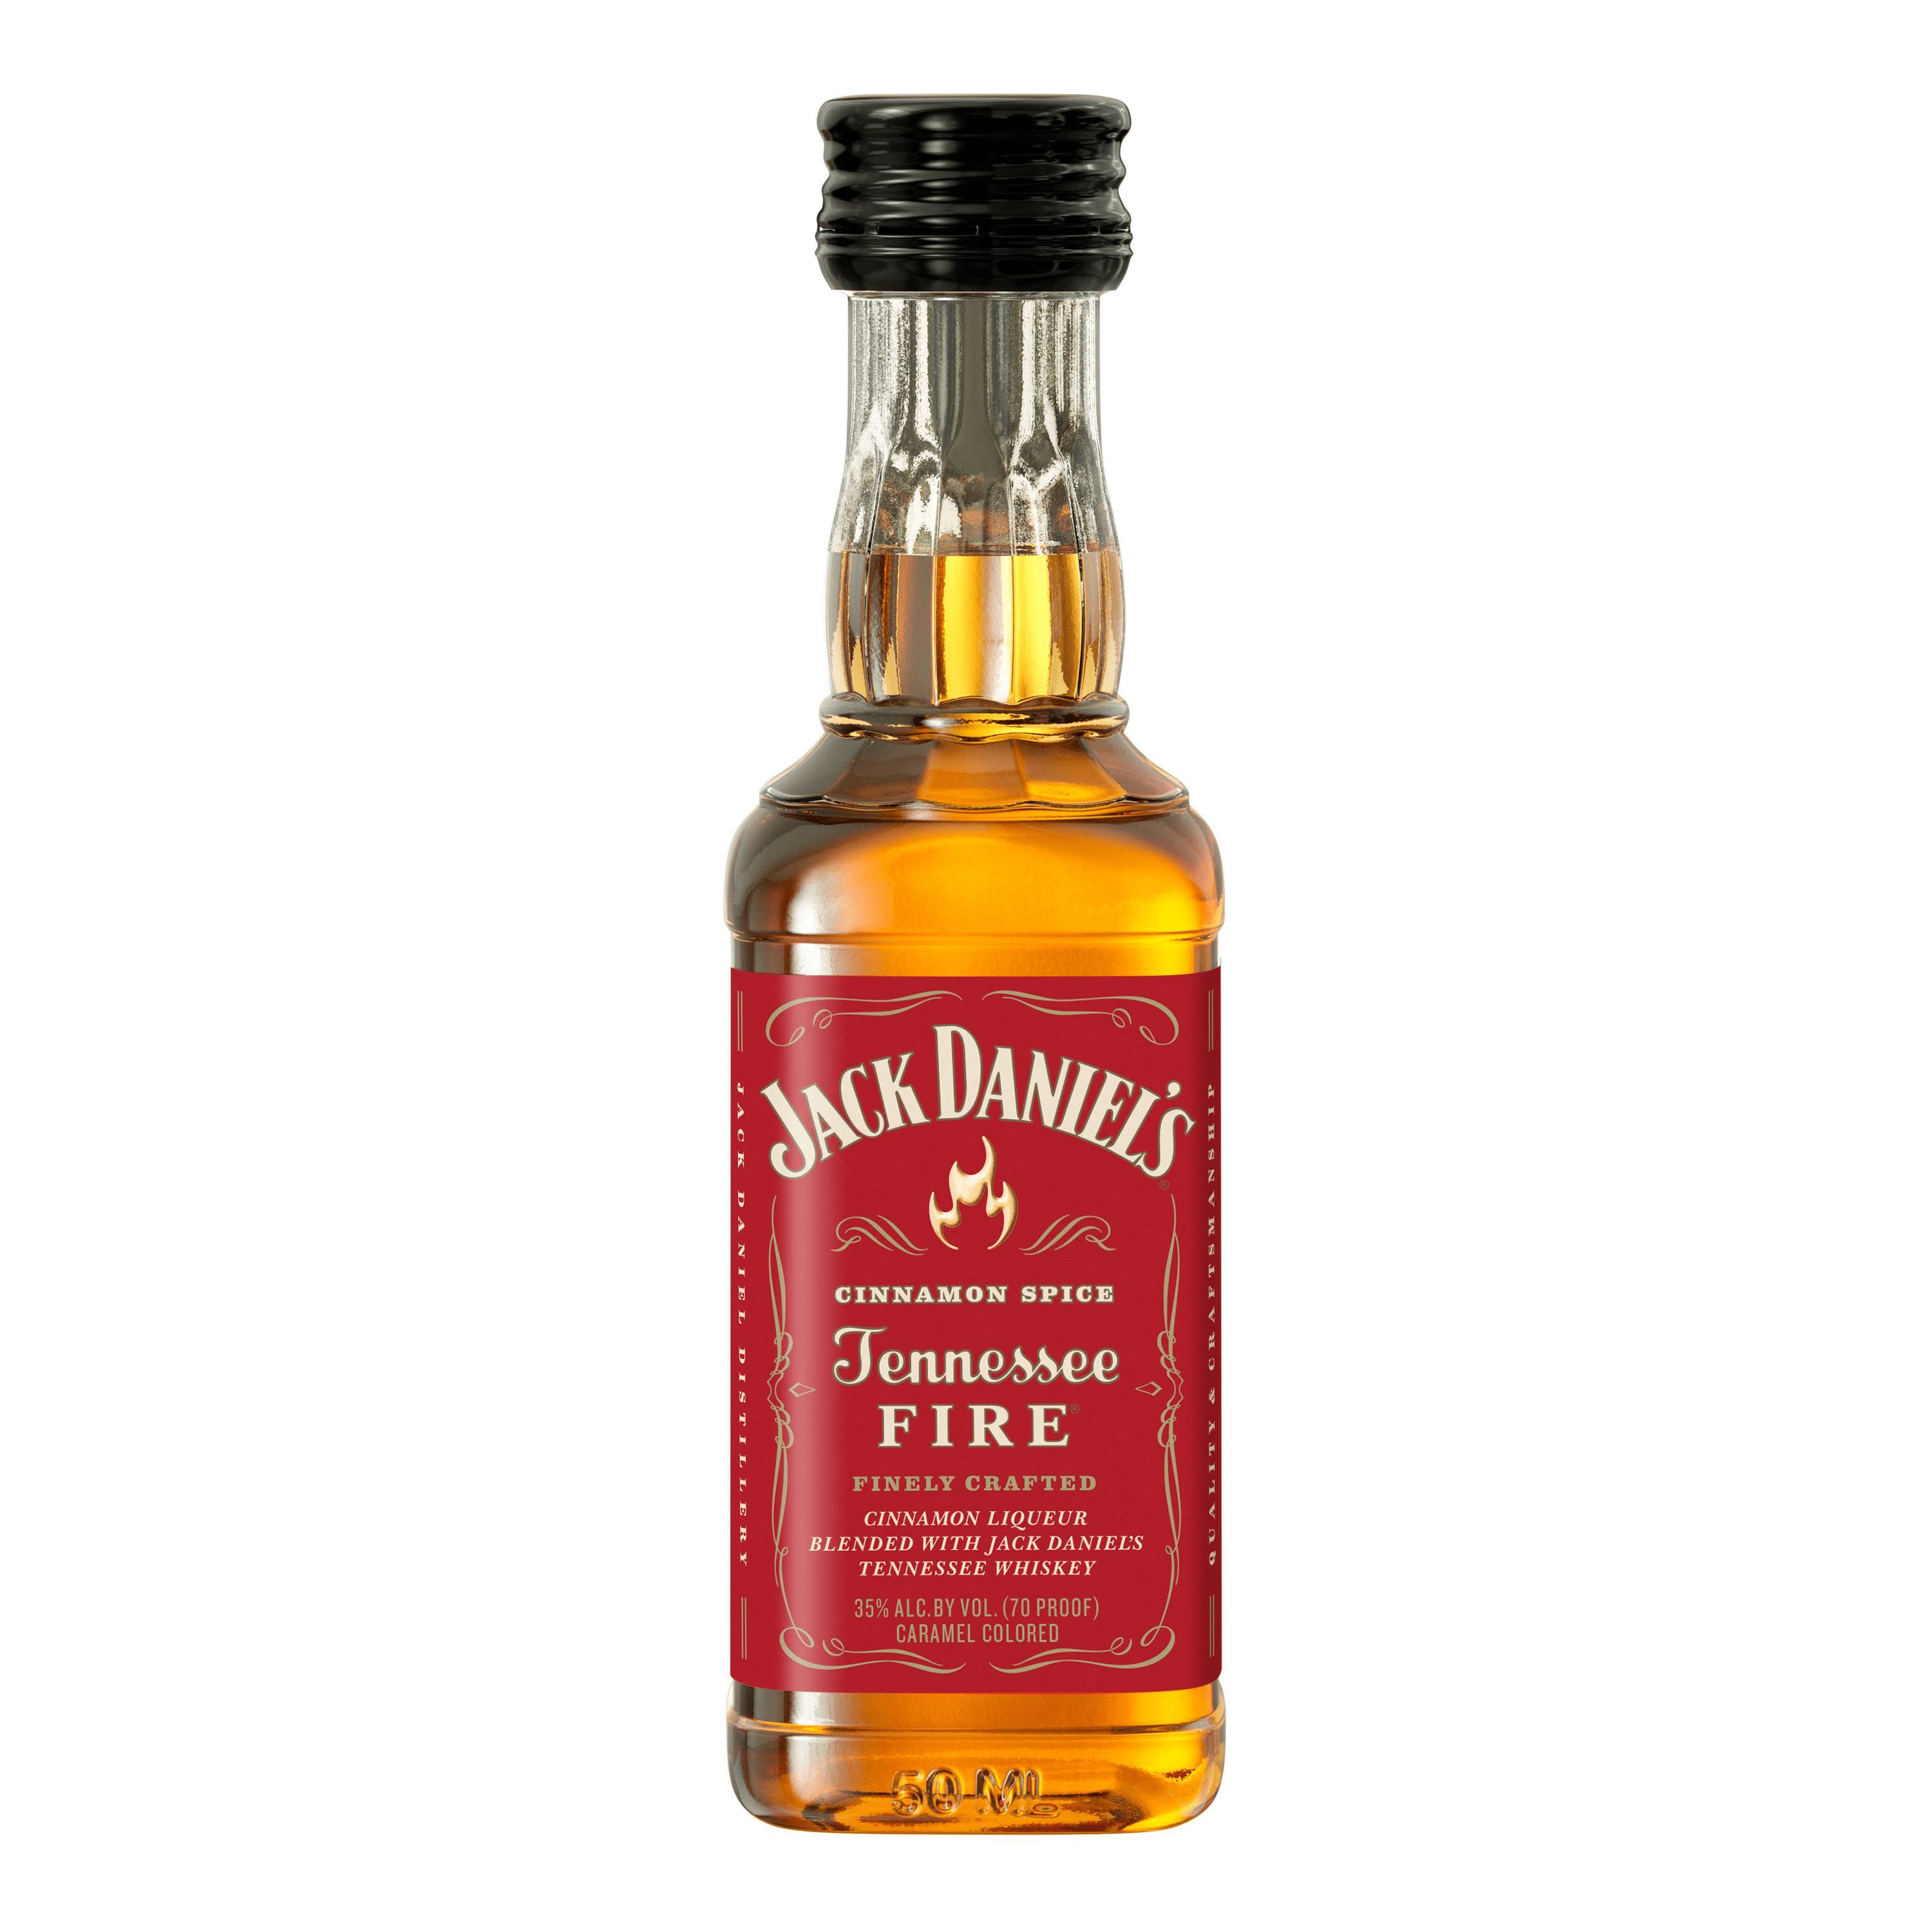 Jack Daniel's Tennessee Fire Whiskey - 50 ml bottle